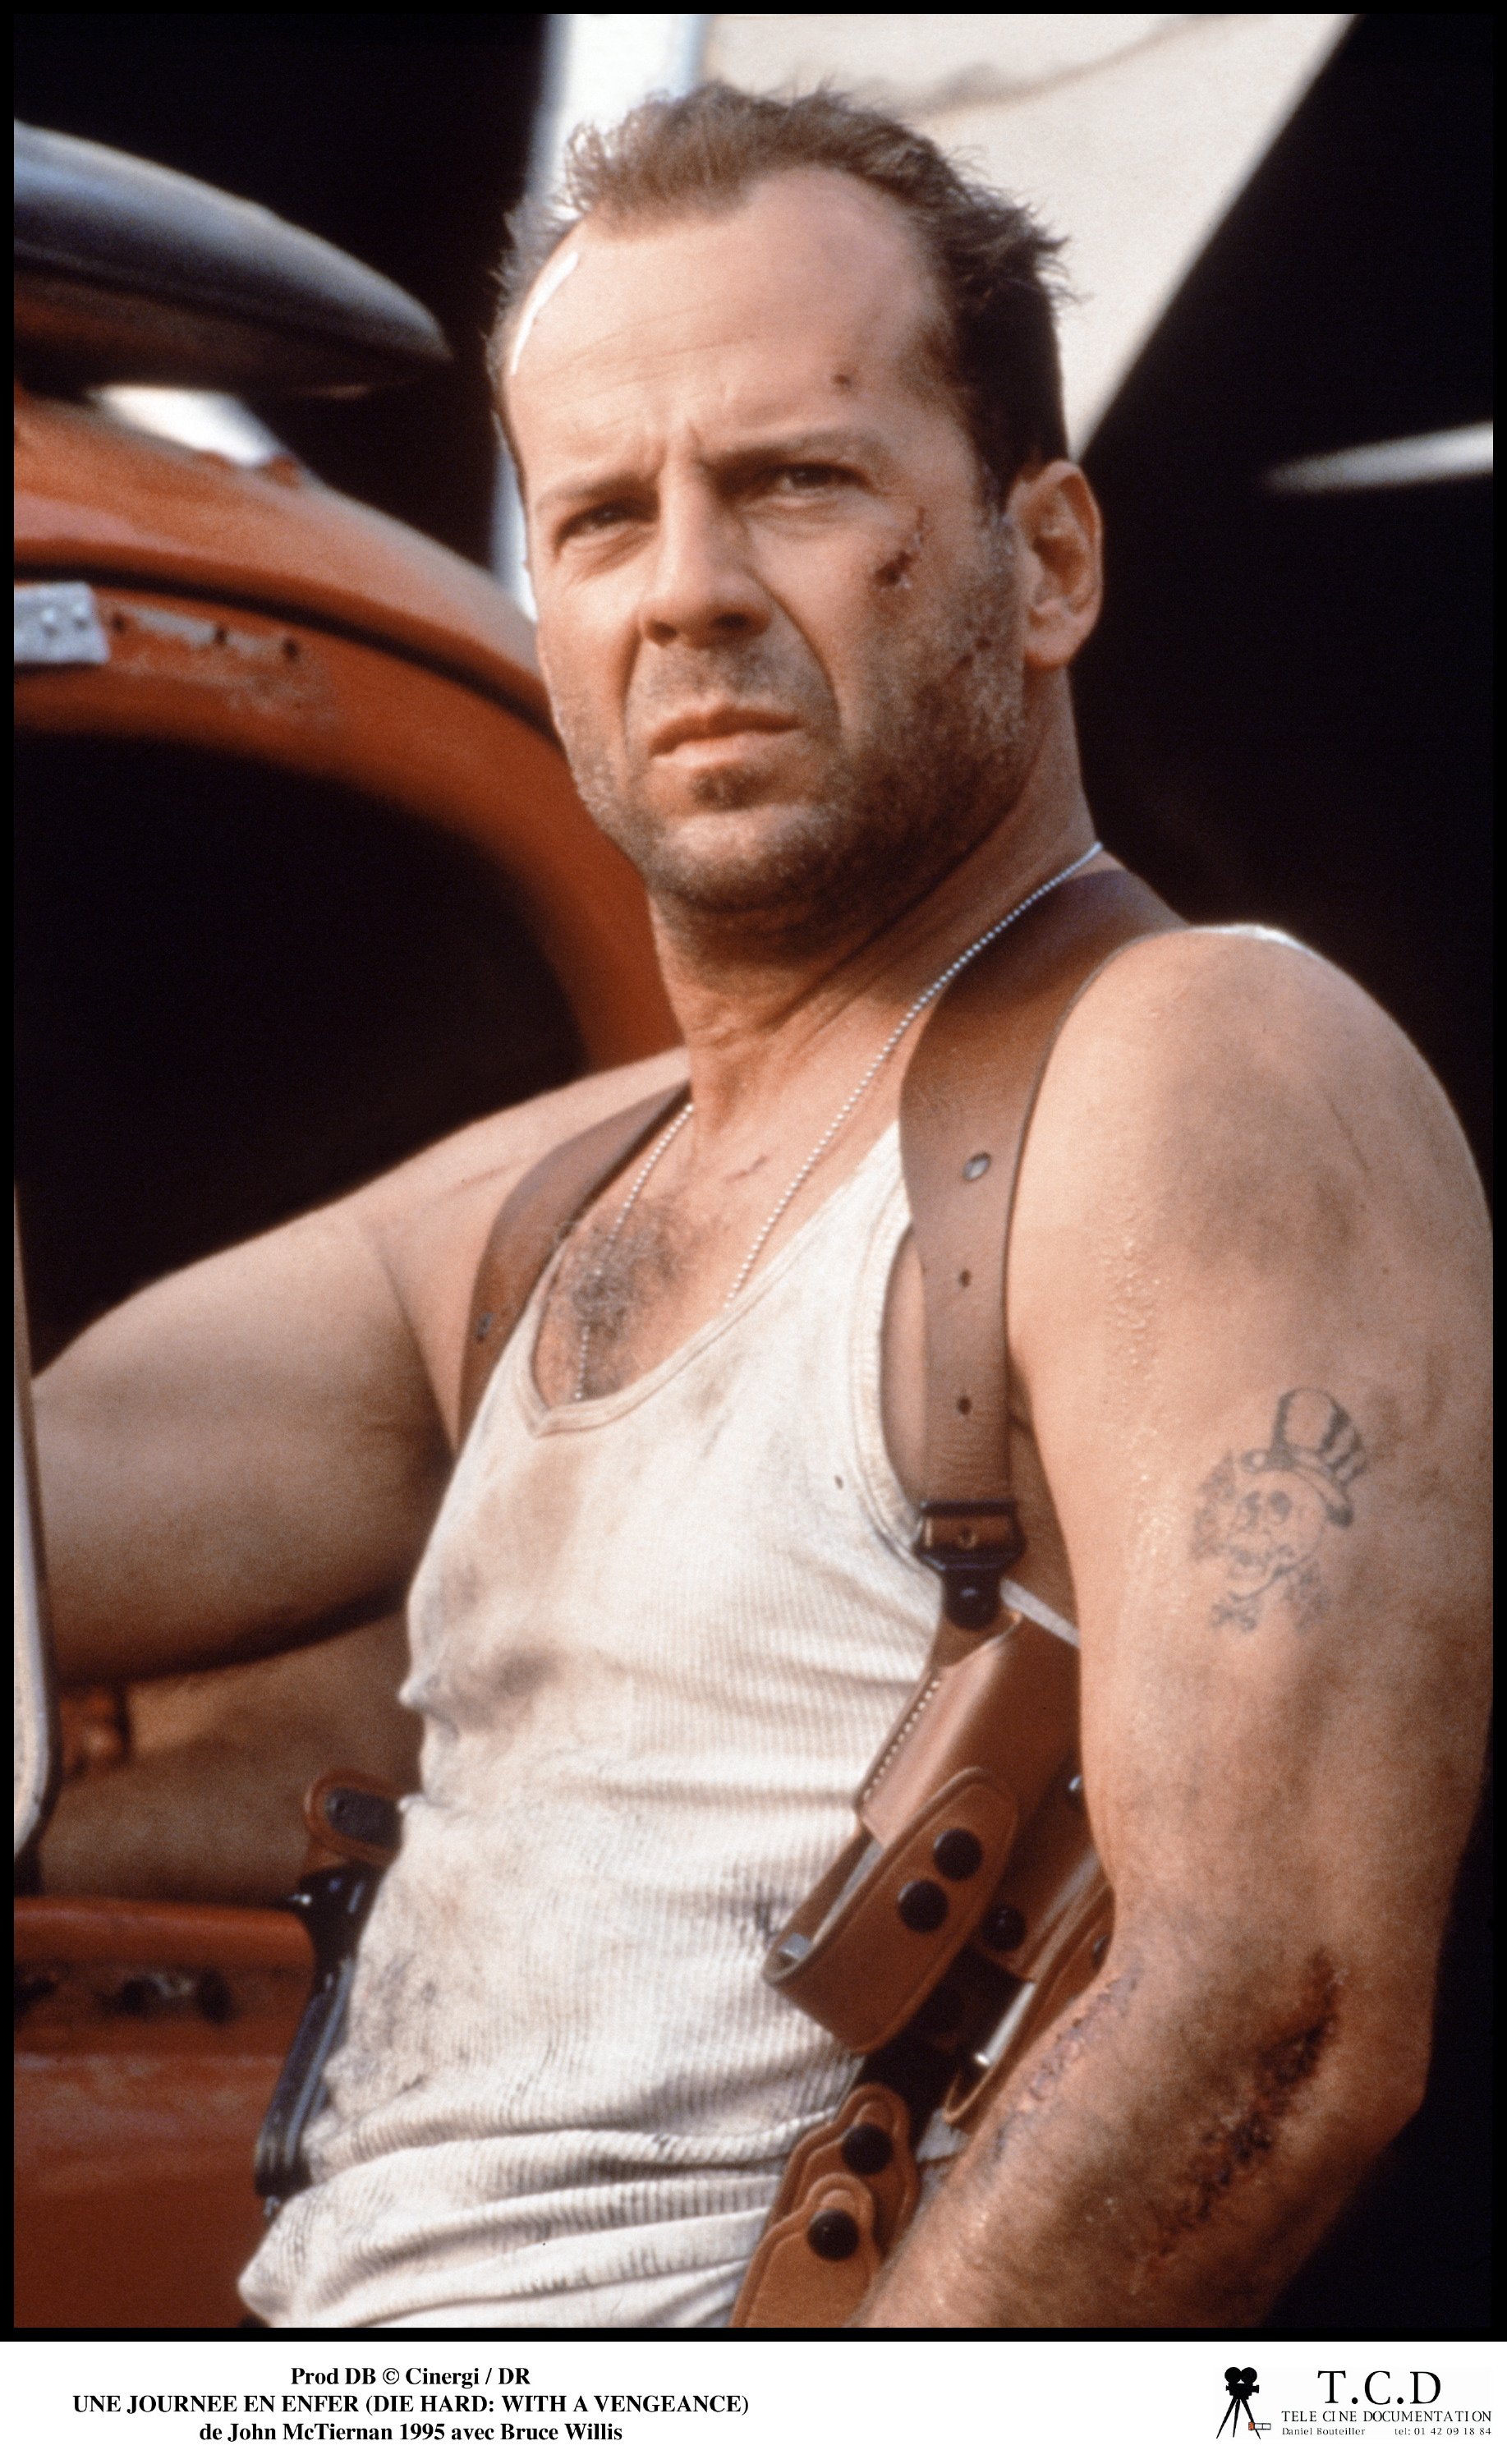 Bruce Willis titkai: ki akart törni az izomagyúak közül - Blikk